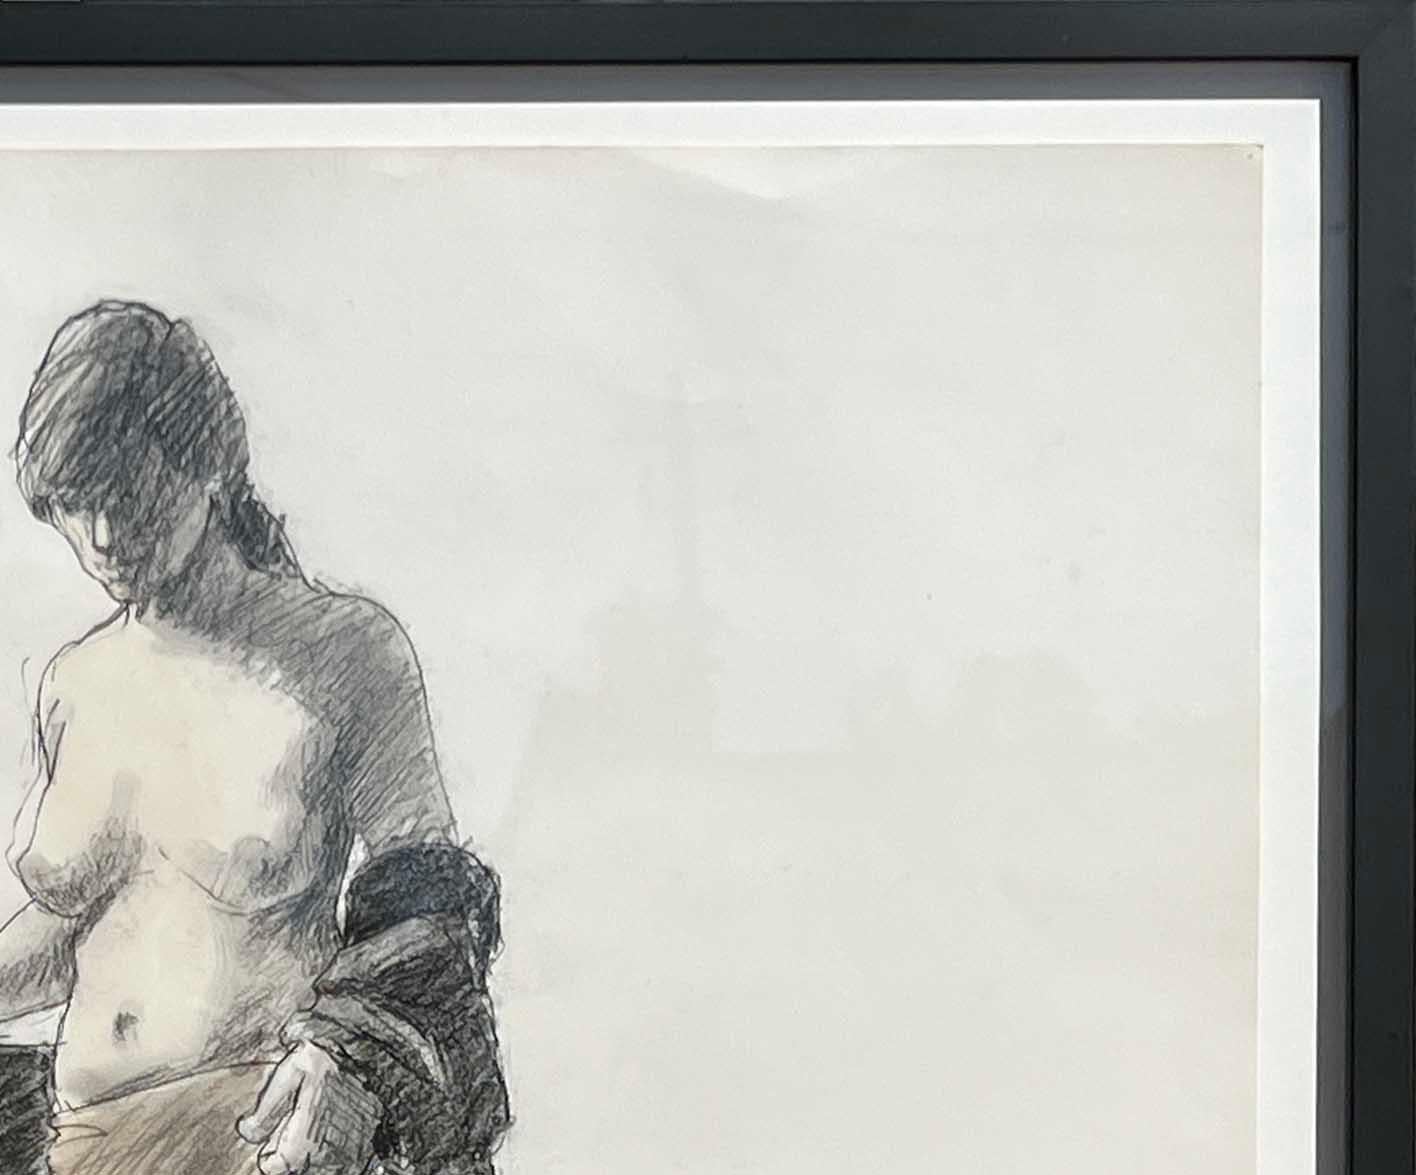 Schwarz-weiße figurative Zeichnung des texanischen Künstlers William Anzalone. Die Zeichnung zeigt eine nackte Frau in Einsamkeit, die ihr Gewand ablegt. Signiert vom Künstler unten rechts. Gerahmt in einem schönen schwarzen modernen Rahmen.